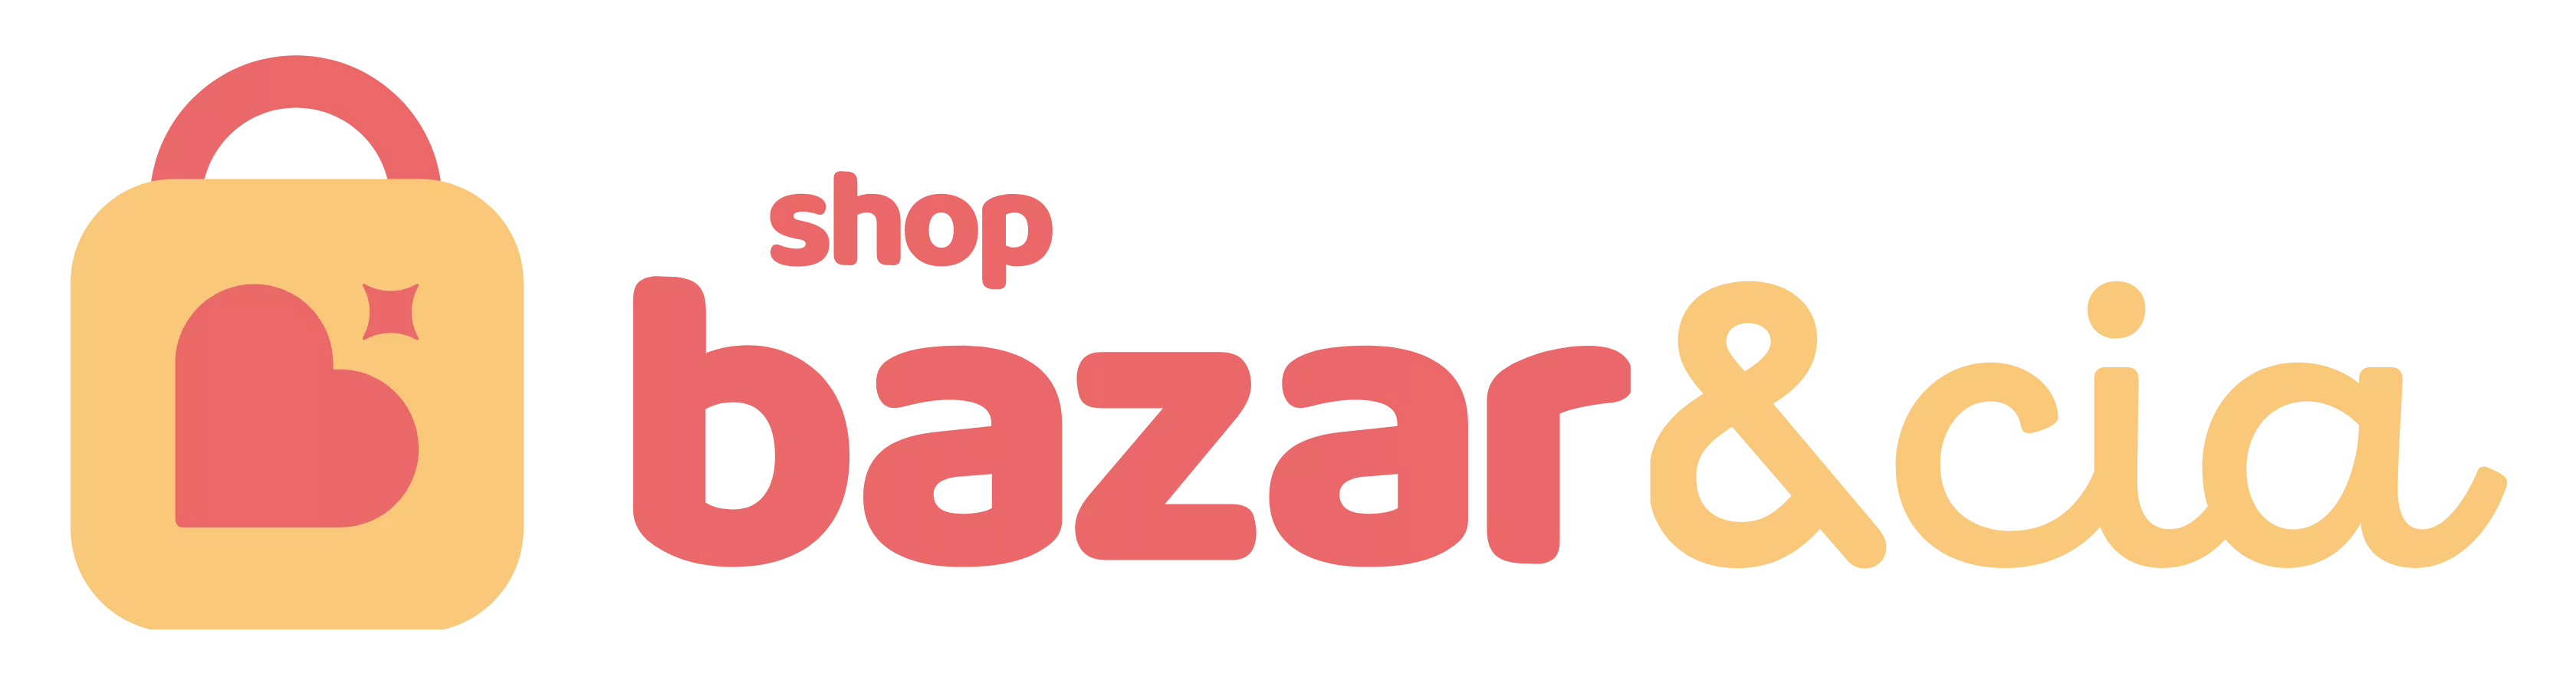 SHOP BAZAR & CIA